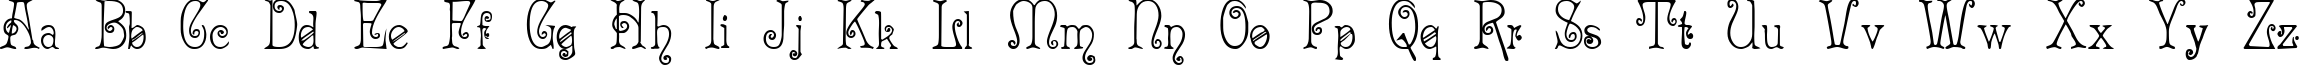 Пример написания английского алфавита шрифтом Acadian Cyr